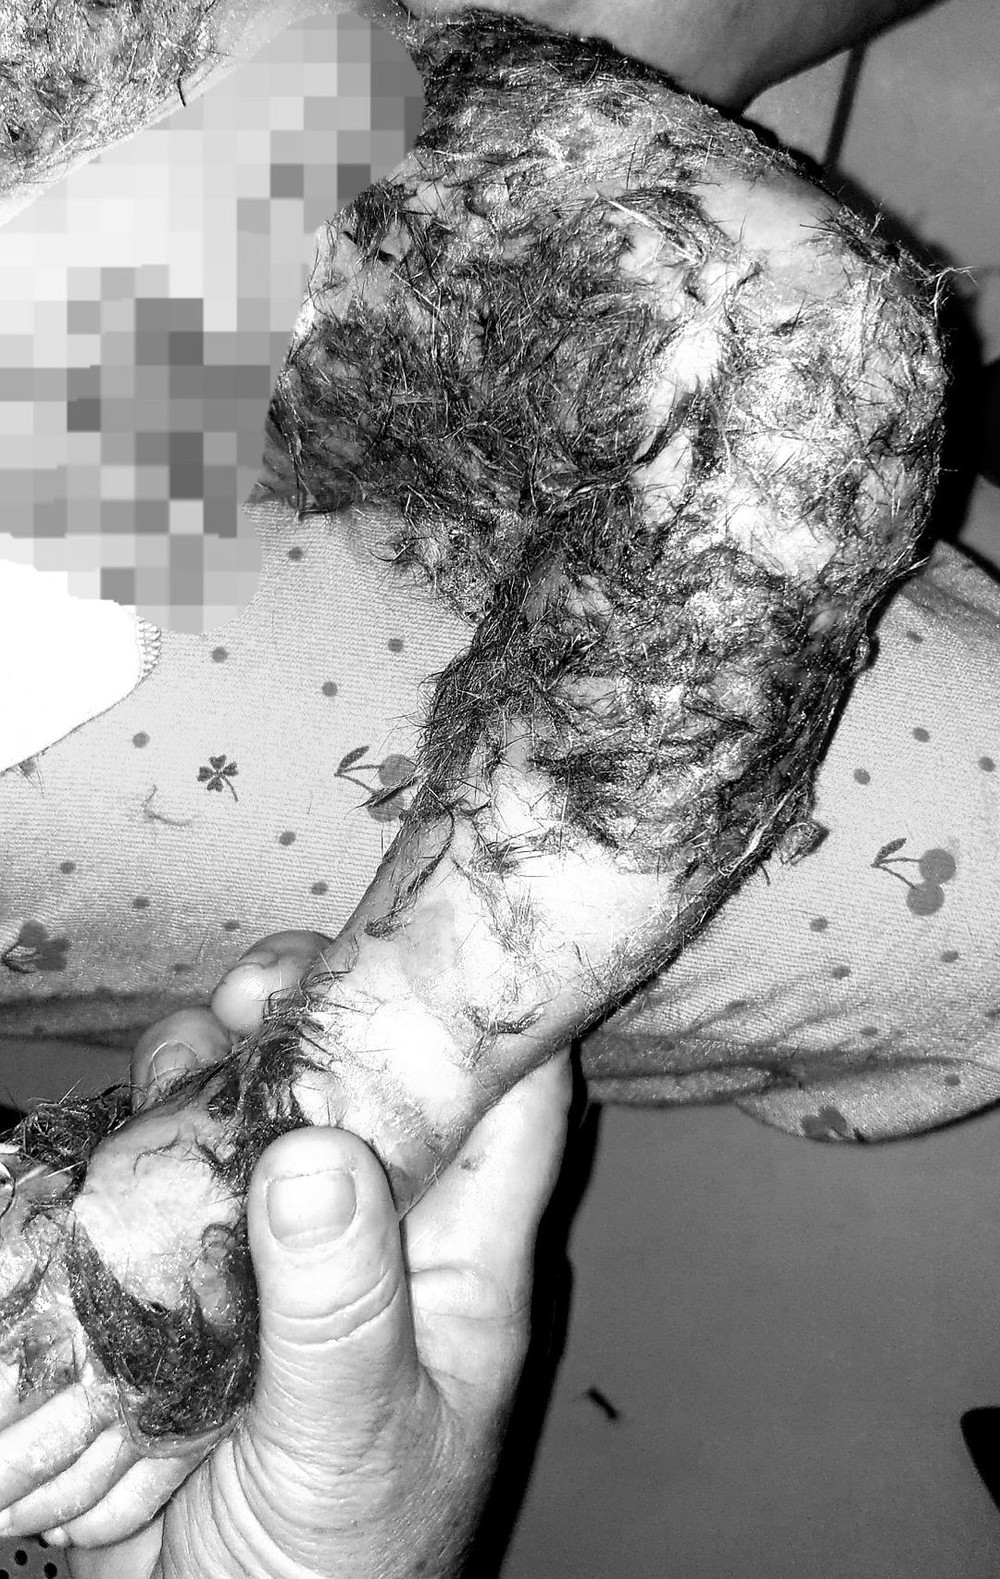 Thầy lang đắp lông chó để chữa vết bỏng từ ngực xuống chân cho bé 8 tháng tuổi - Ảnh 1.